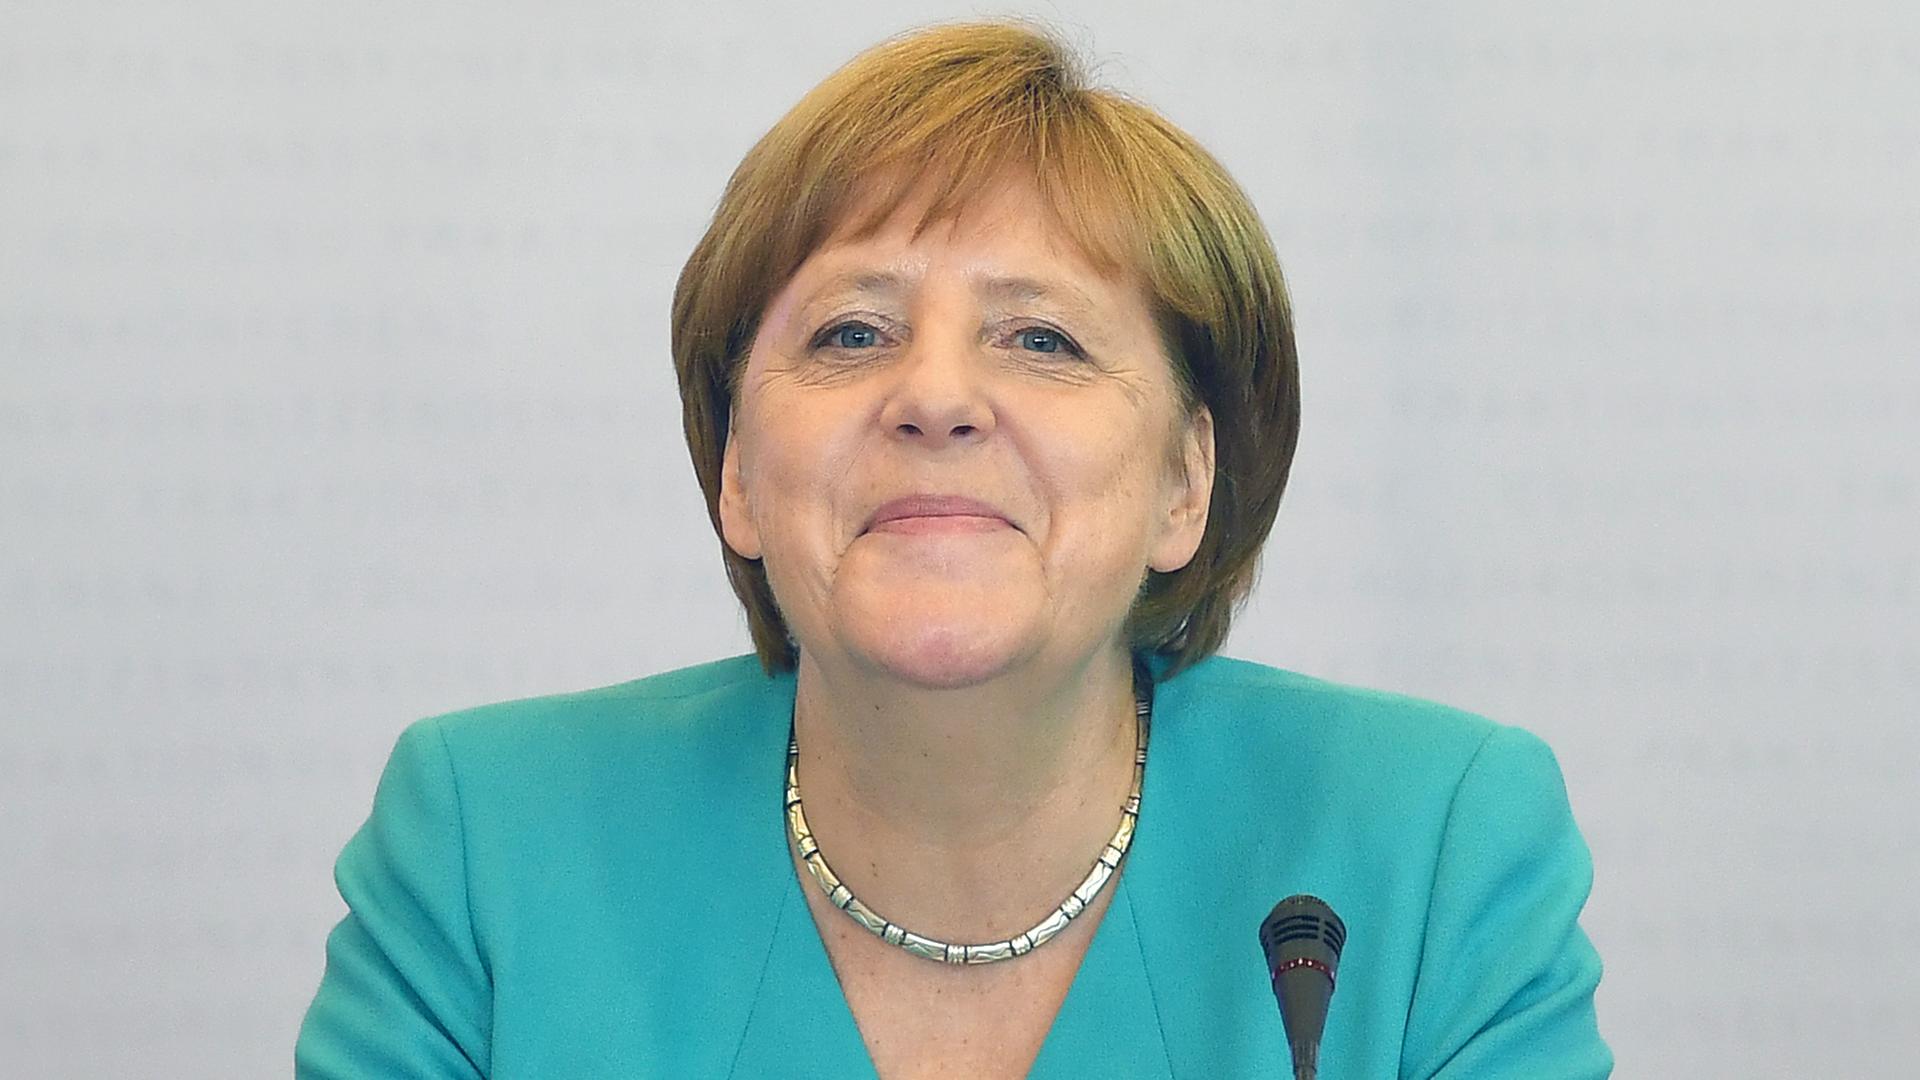 Bundeskanzlerin Angela Merkel (CDU) besucht die Konferenz der CDU/CSU-Fraktionsvorsitzenden von Bund und Ländern. Die Unionsfraktionschefs wollen sich über Klimapolitik und Digitalisierung beraten.